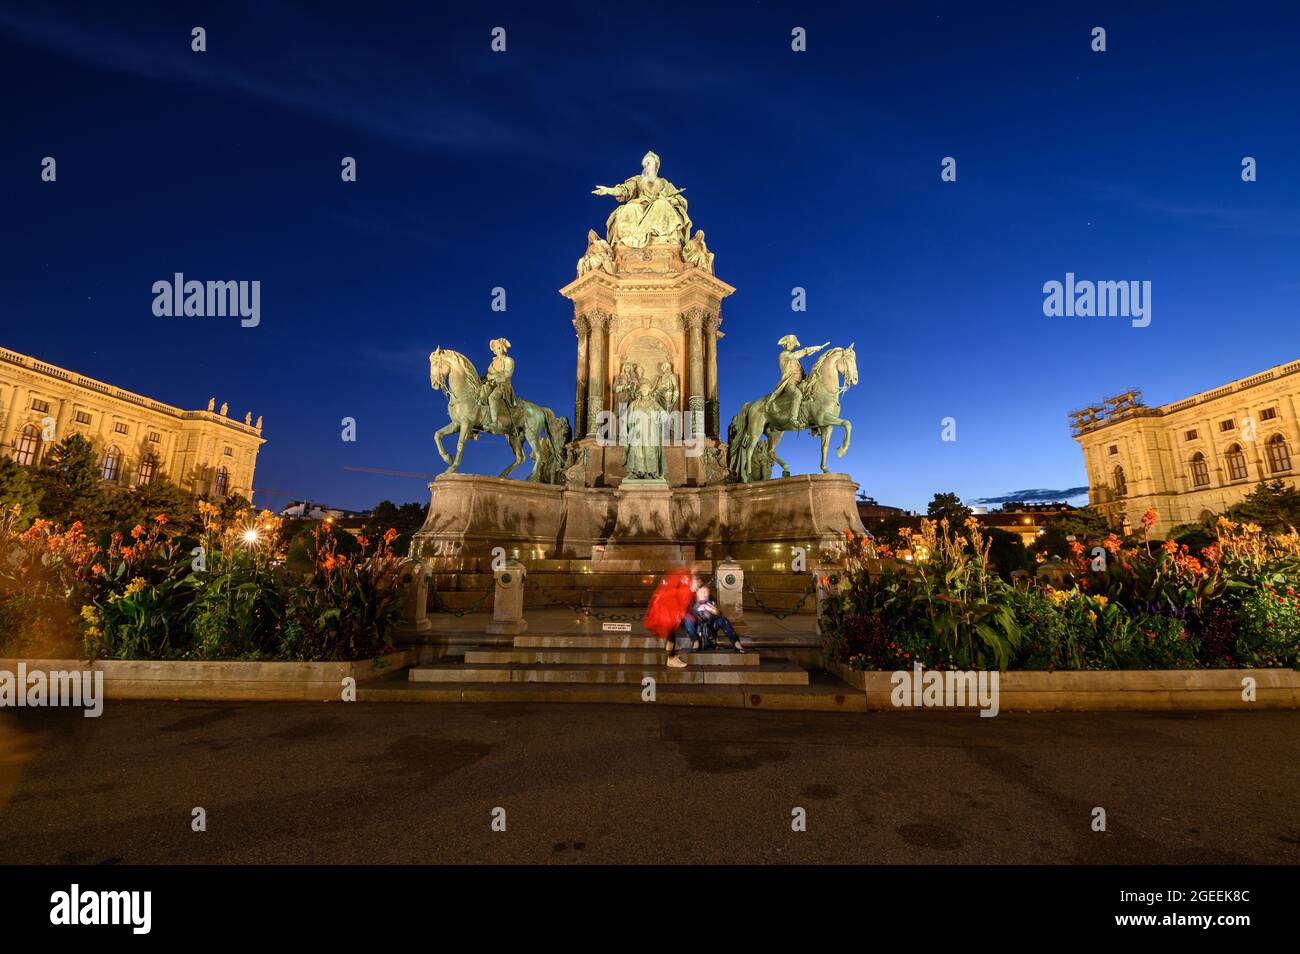 El monumento de la Emperatriz Maria Theresa está situado en el centro de Maria-Theresien-Platz, en el centro de Viena. Foto de stock